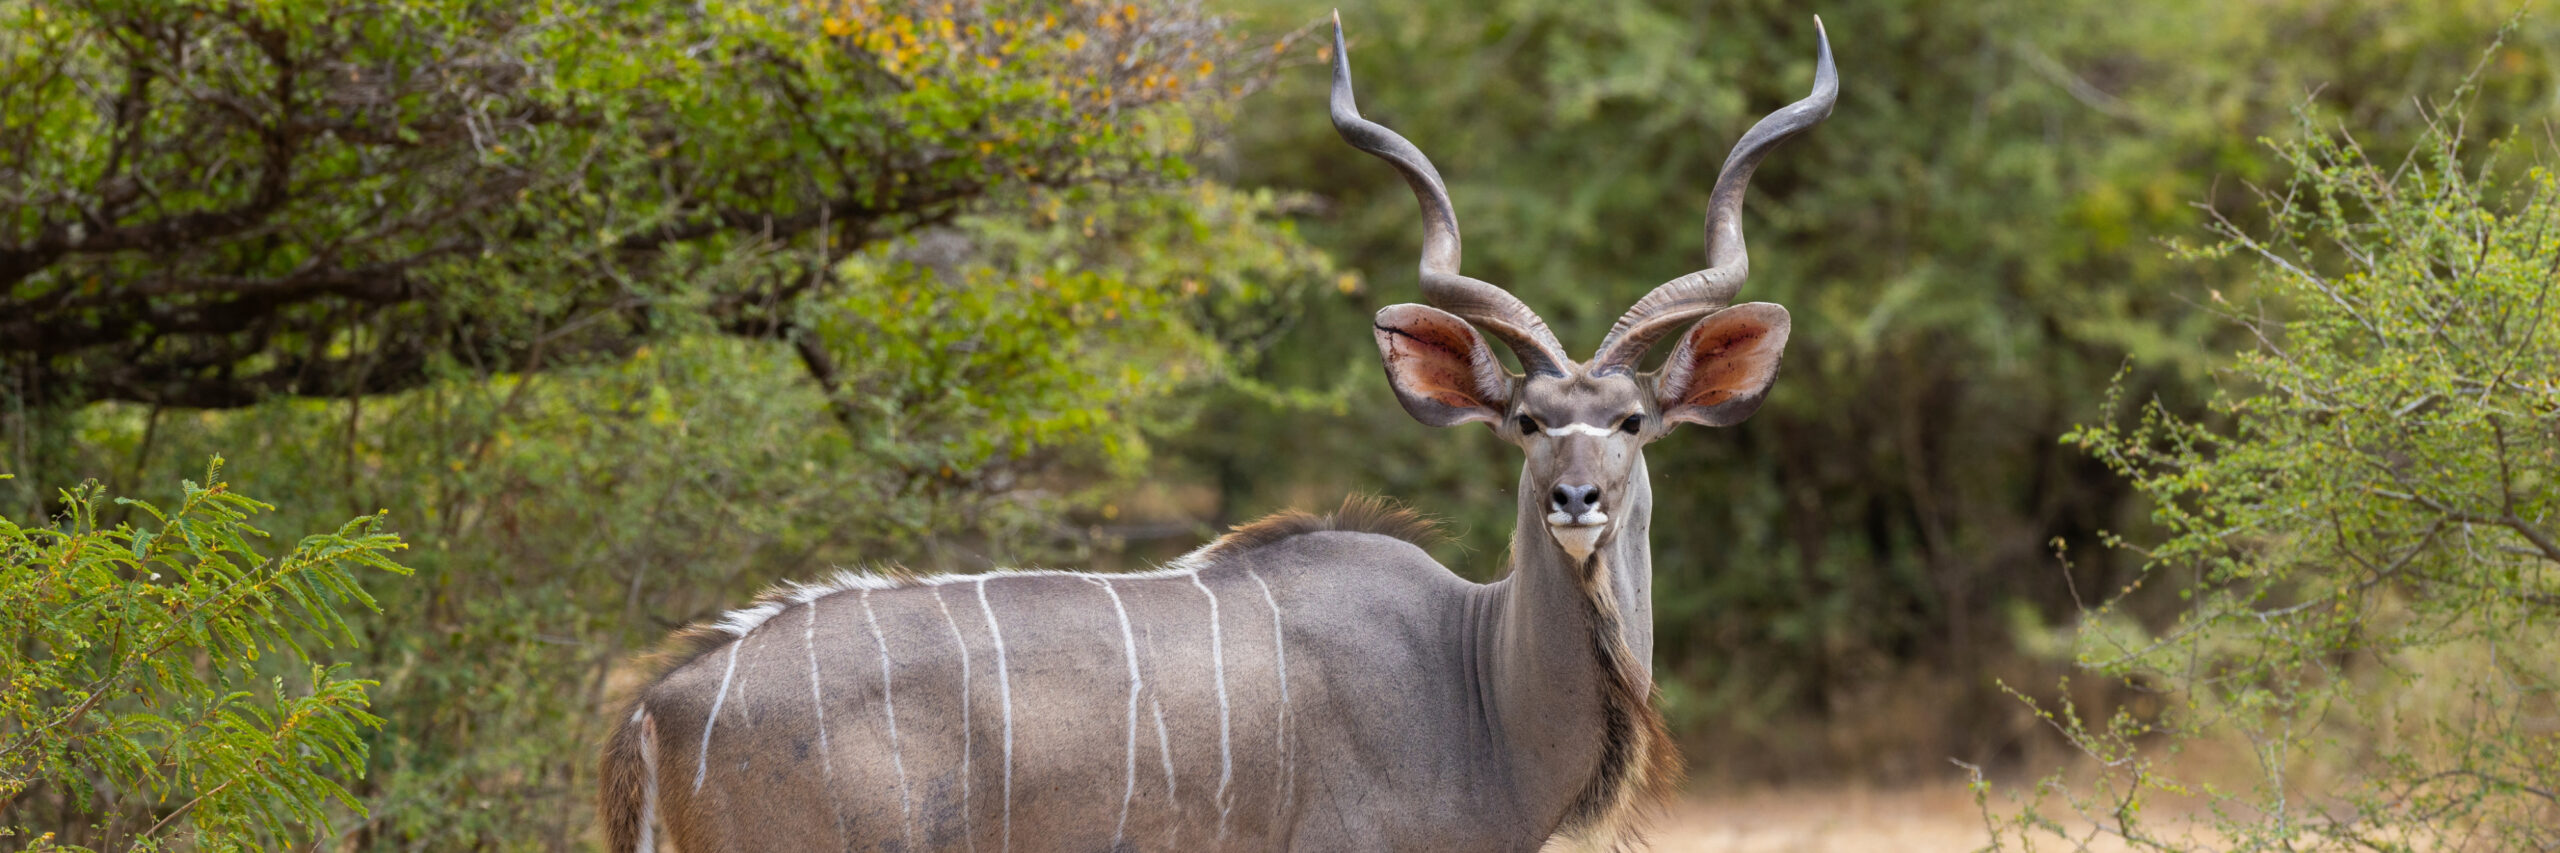 southern-greater-kudu